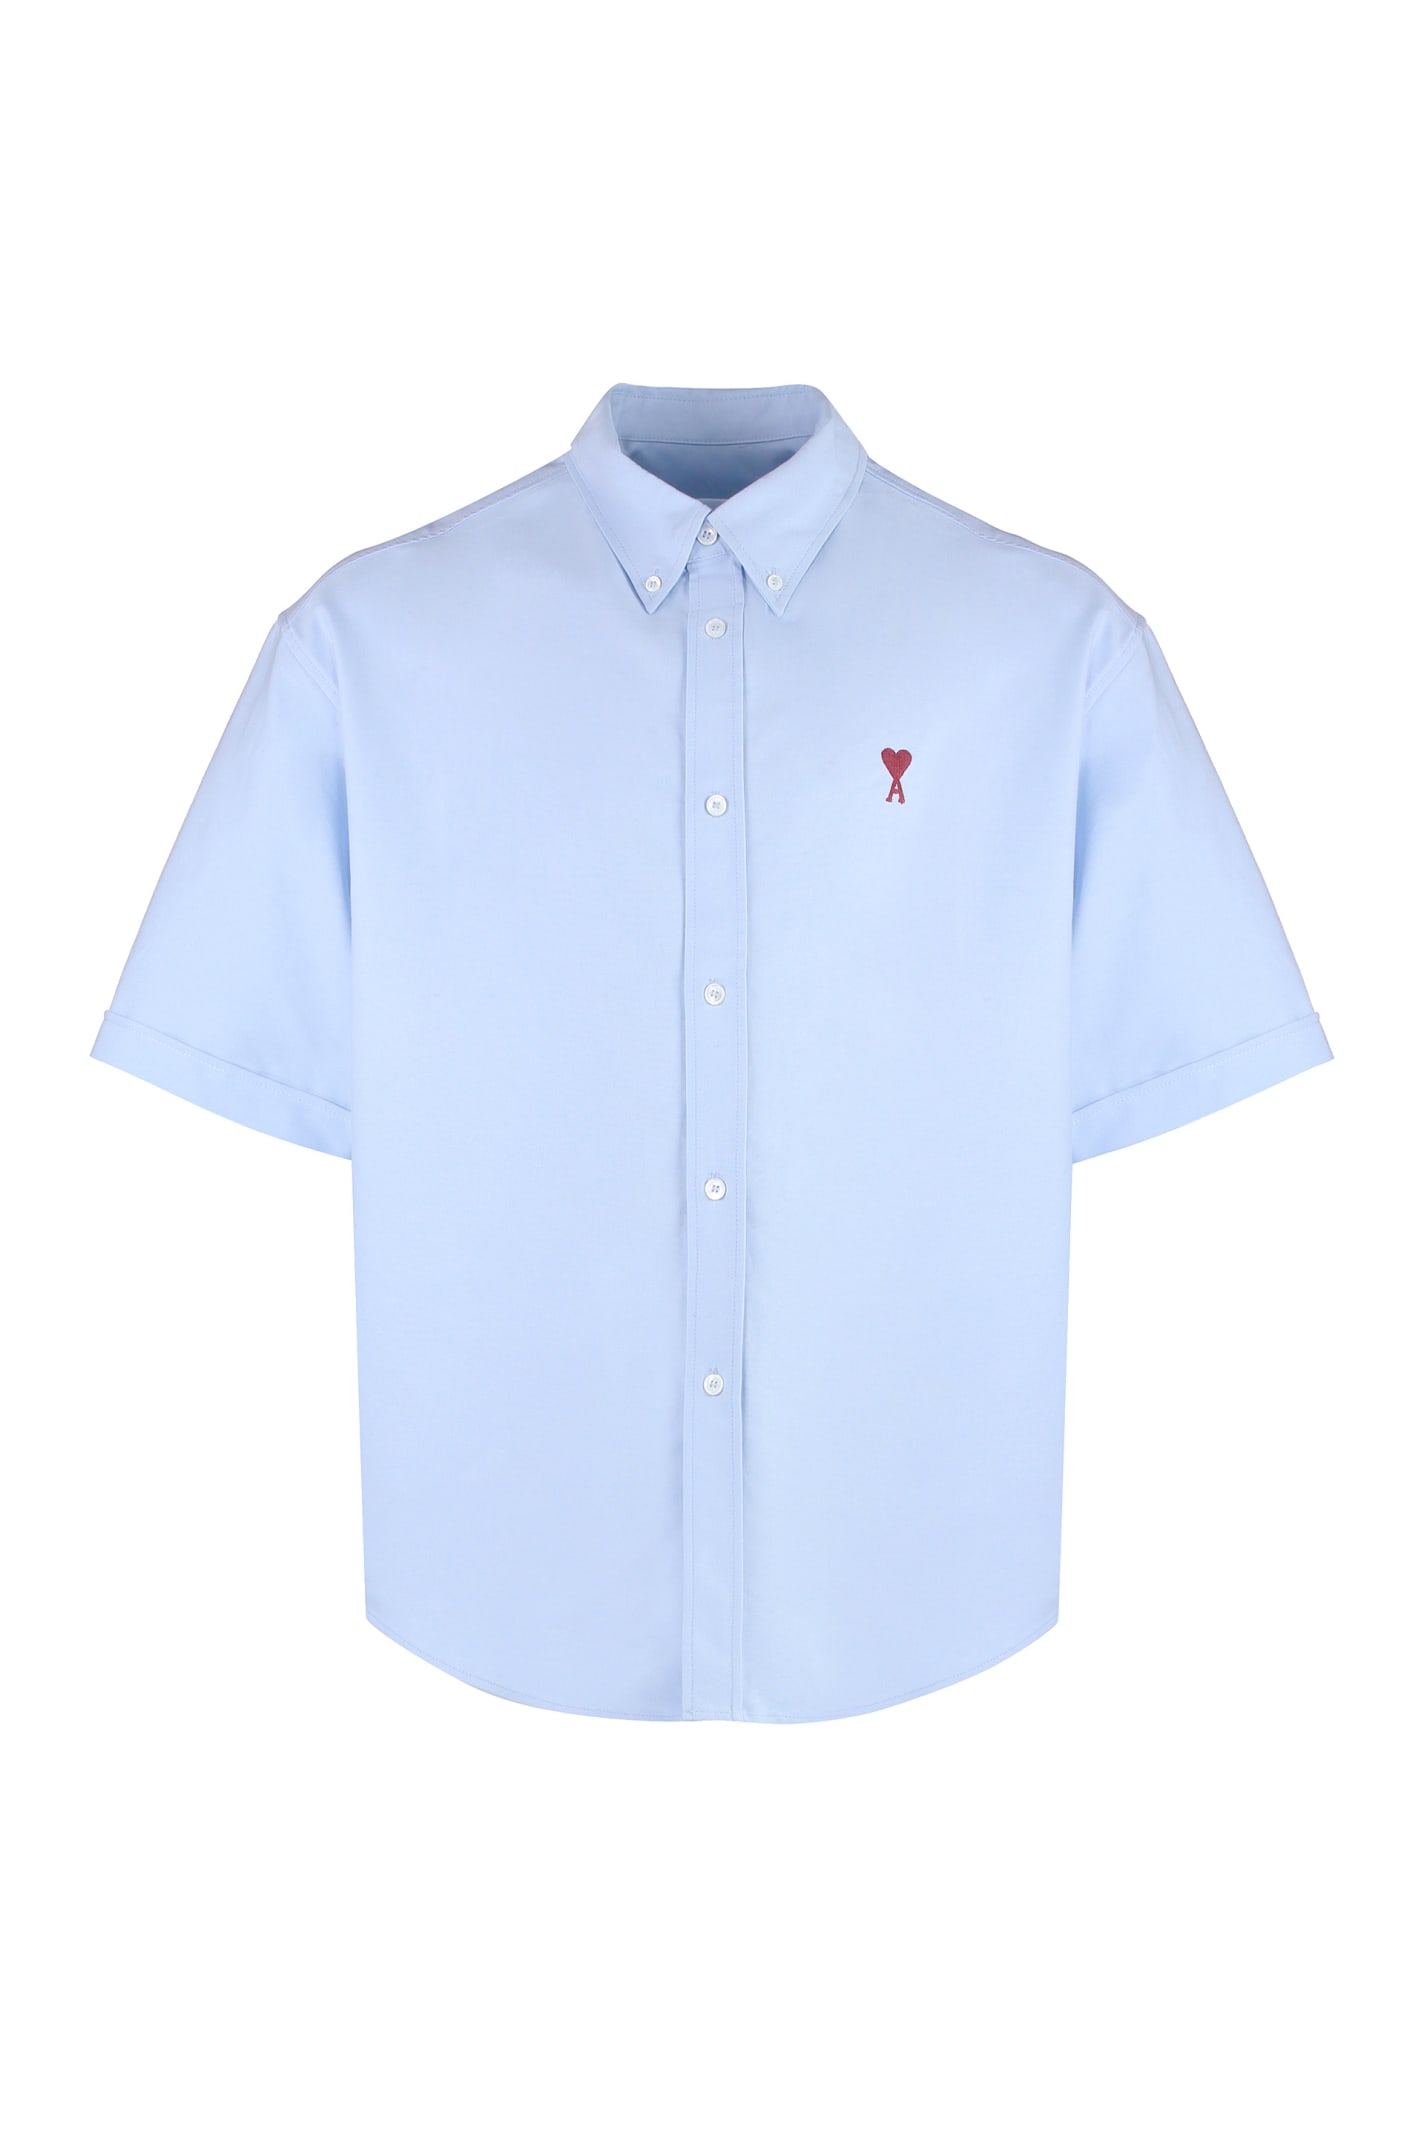 Shop Ami Alexandre Mattiussi Short Sleeve Cotton Shirt In Light Blue